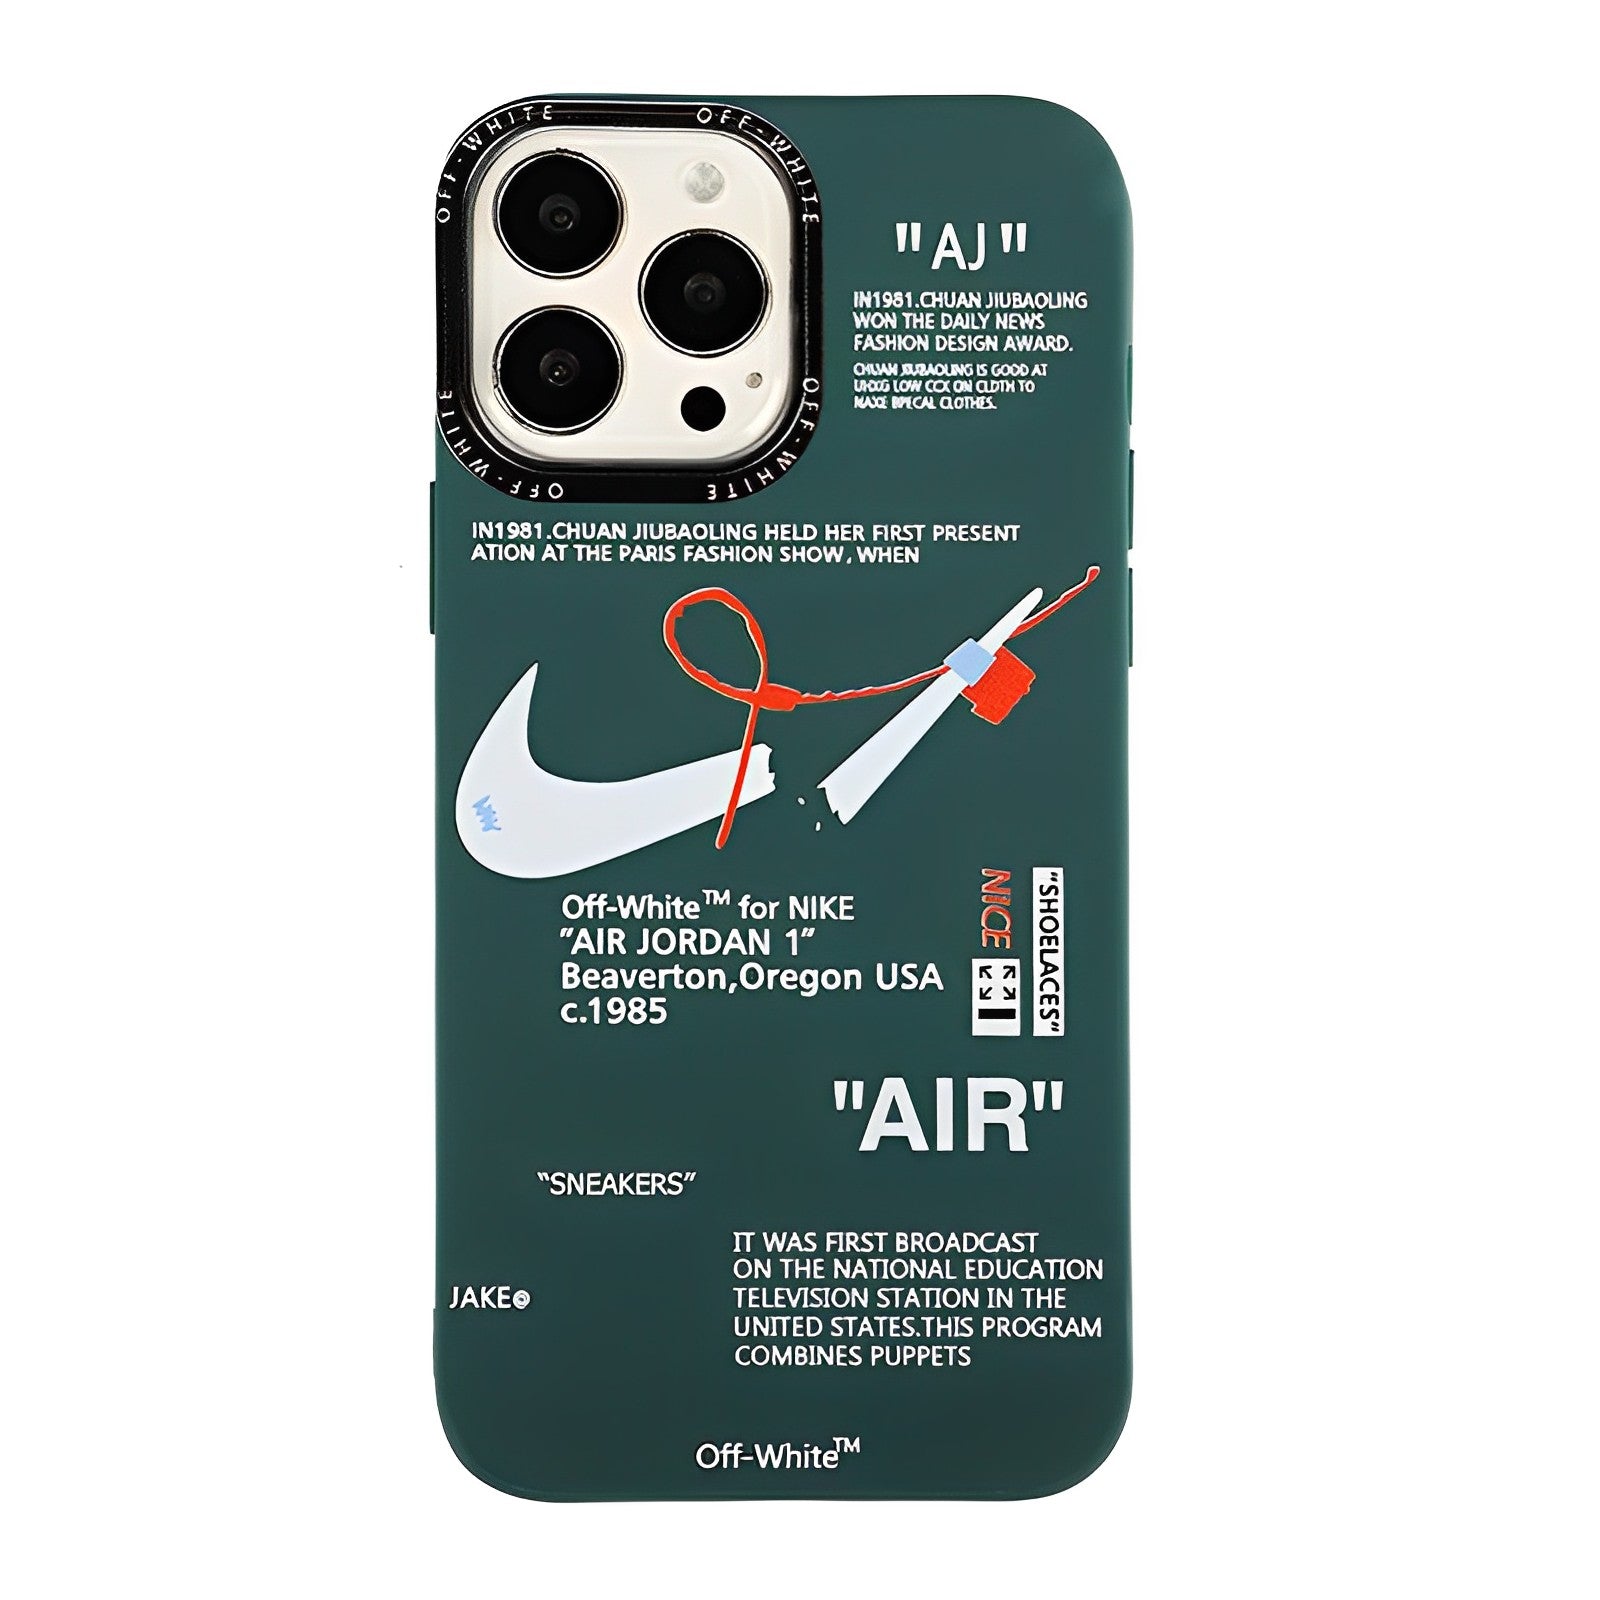 AIR JORDAN 1 ×NK Tag iPhone Case